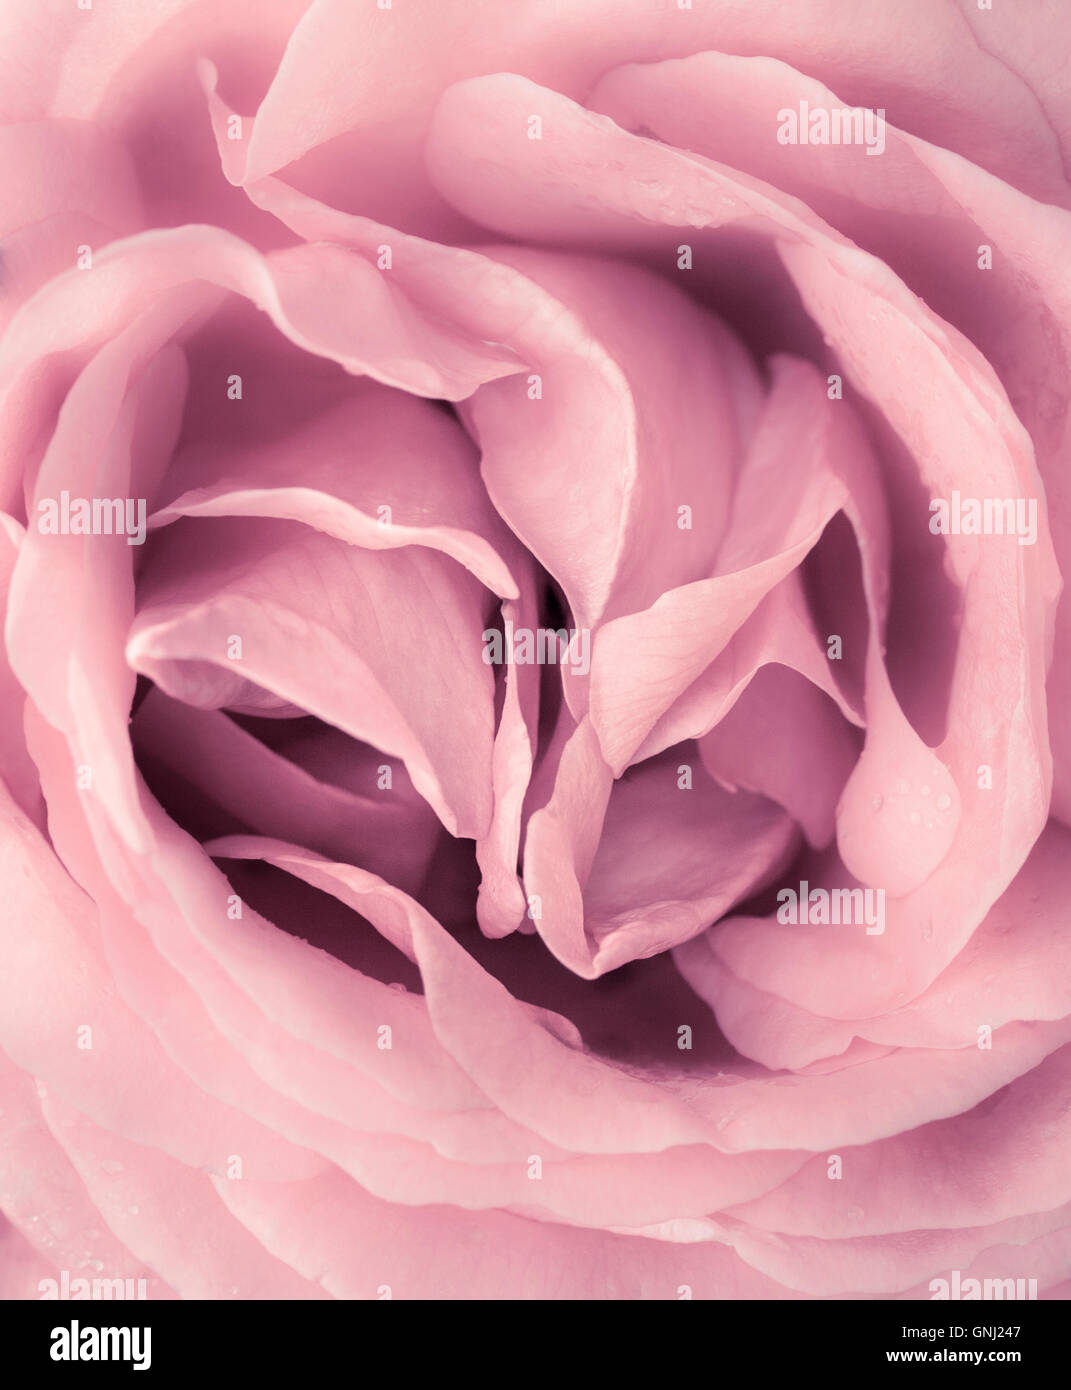 Pink Rose close up Stock Photo